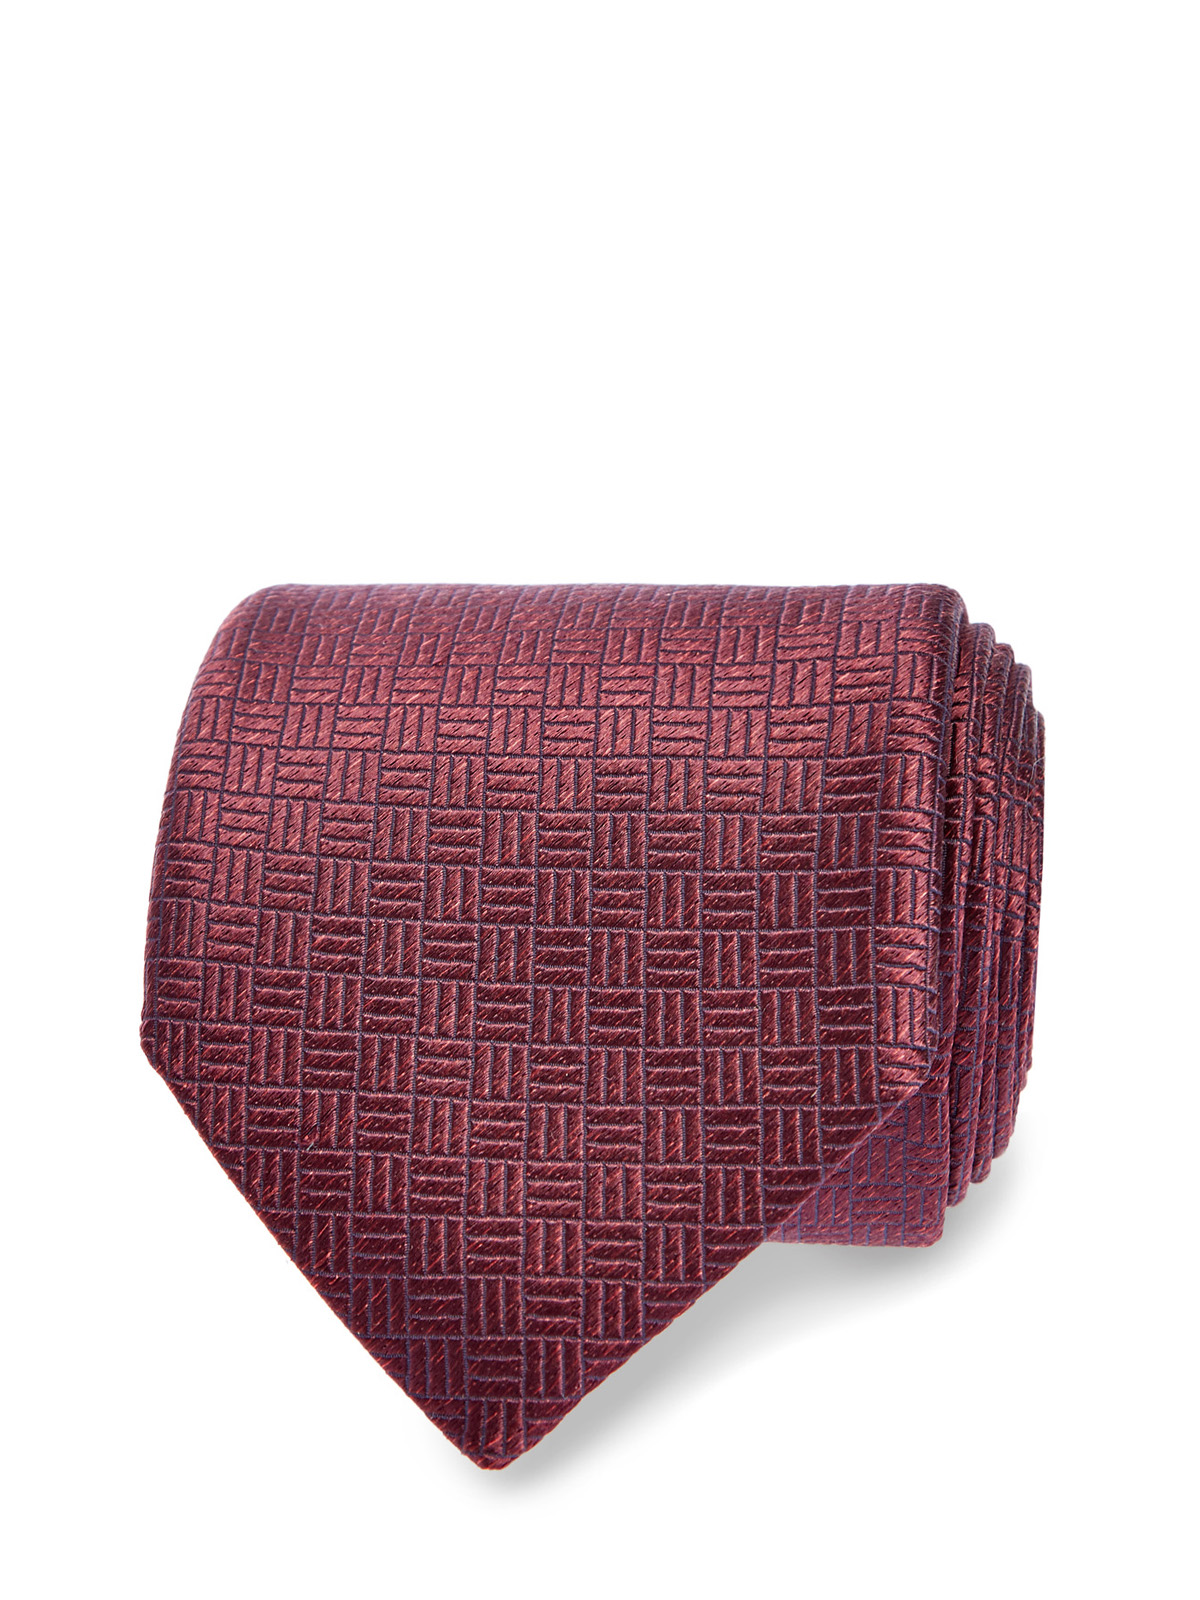 Шелковый галстук с фактурным принтом ручной работы CANALI, цвет бордовый, размер 37.5;38;38.5;39;40.5